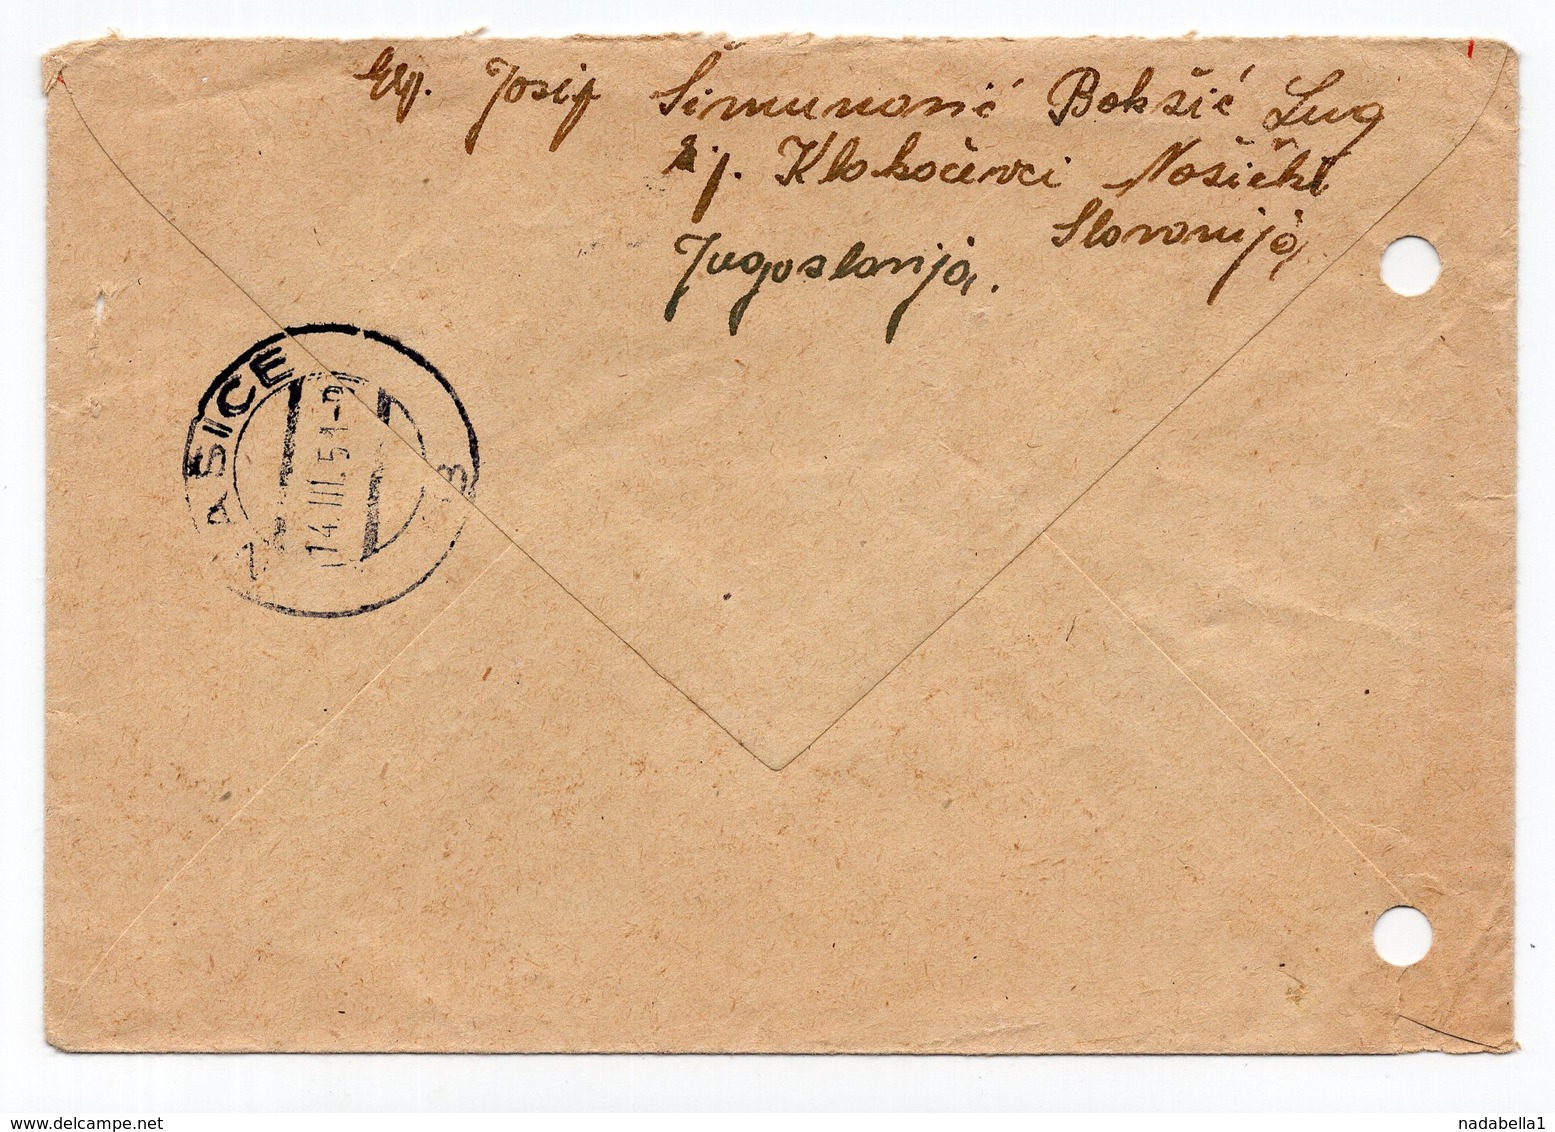 1951 YUGOSLAVIA,CROATIA,KLOKOČEVCI,NAŠICE TO CHICAGO,USA,AIRMAIL,TITO,STATIONERY COVER, USED - Postal Stationery